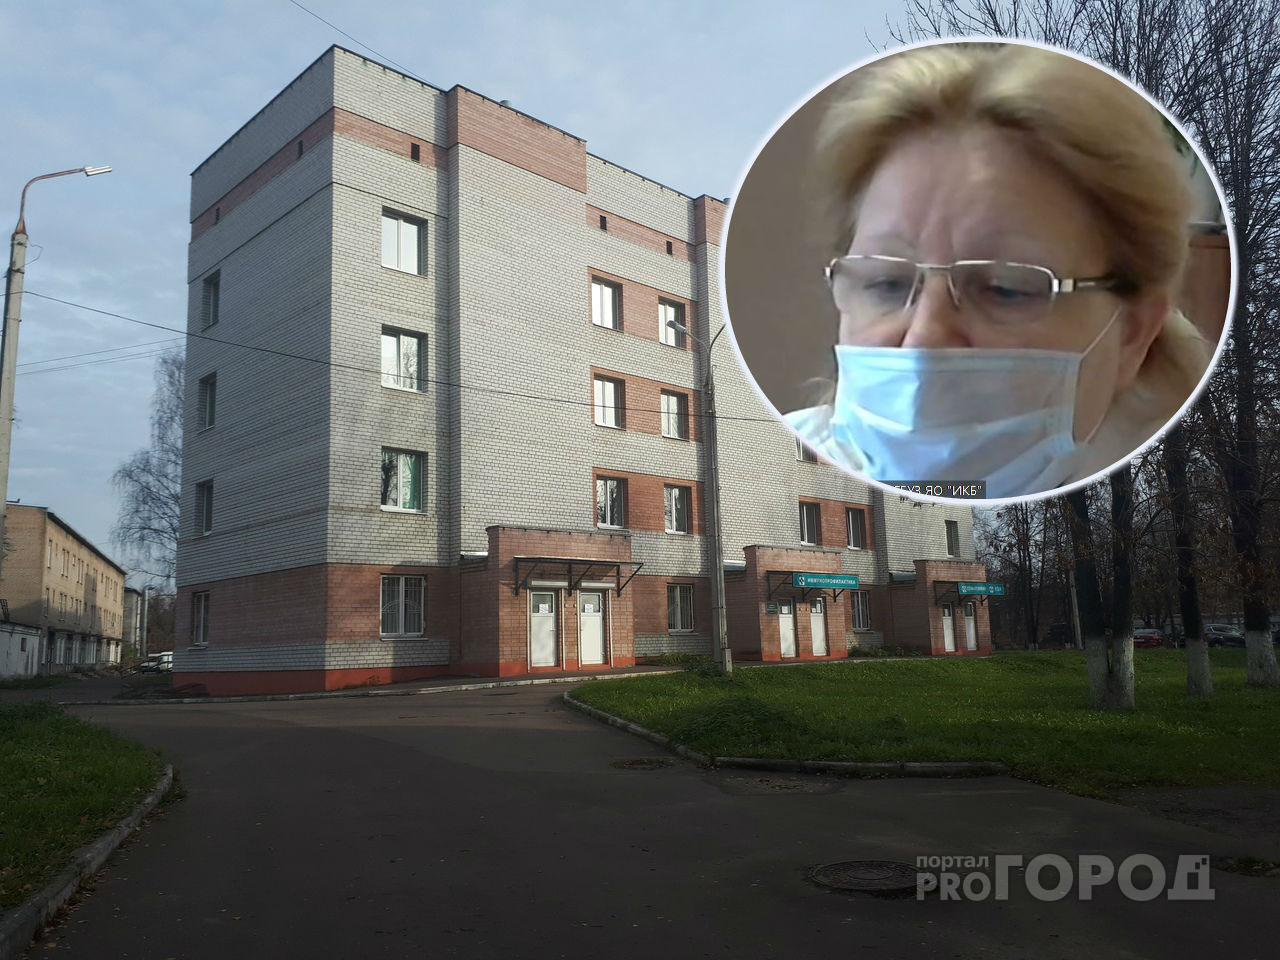 "Умерла спустя семь часов": главврач инфекционной больницы о летальном случае от коронавируса